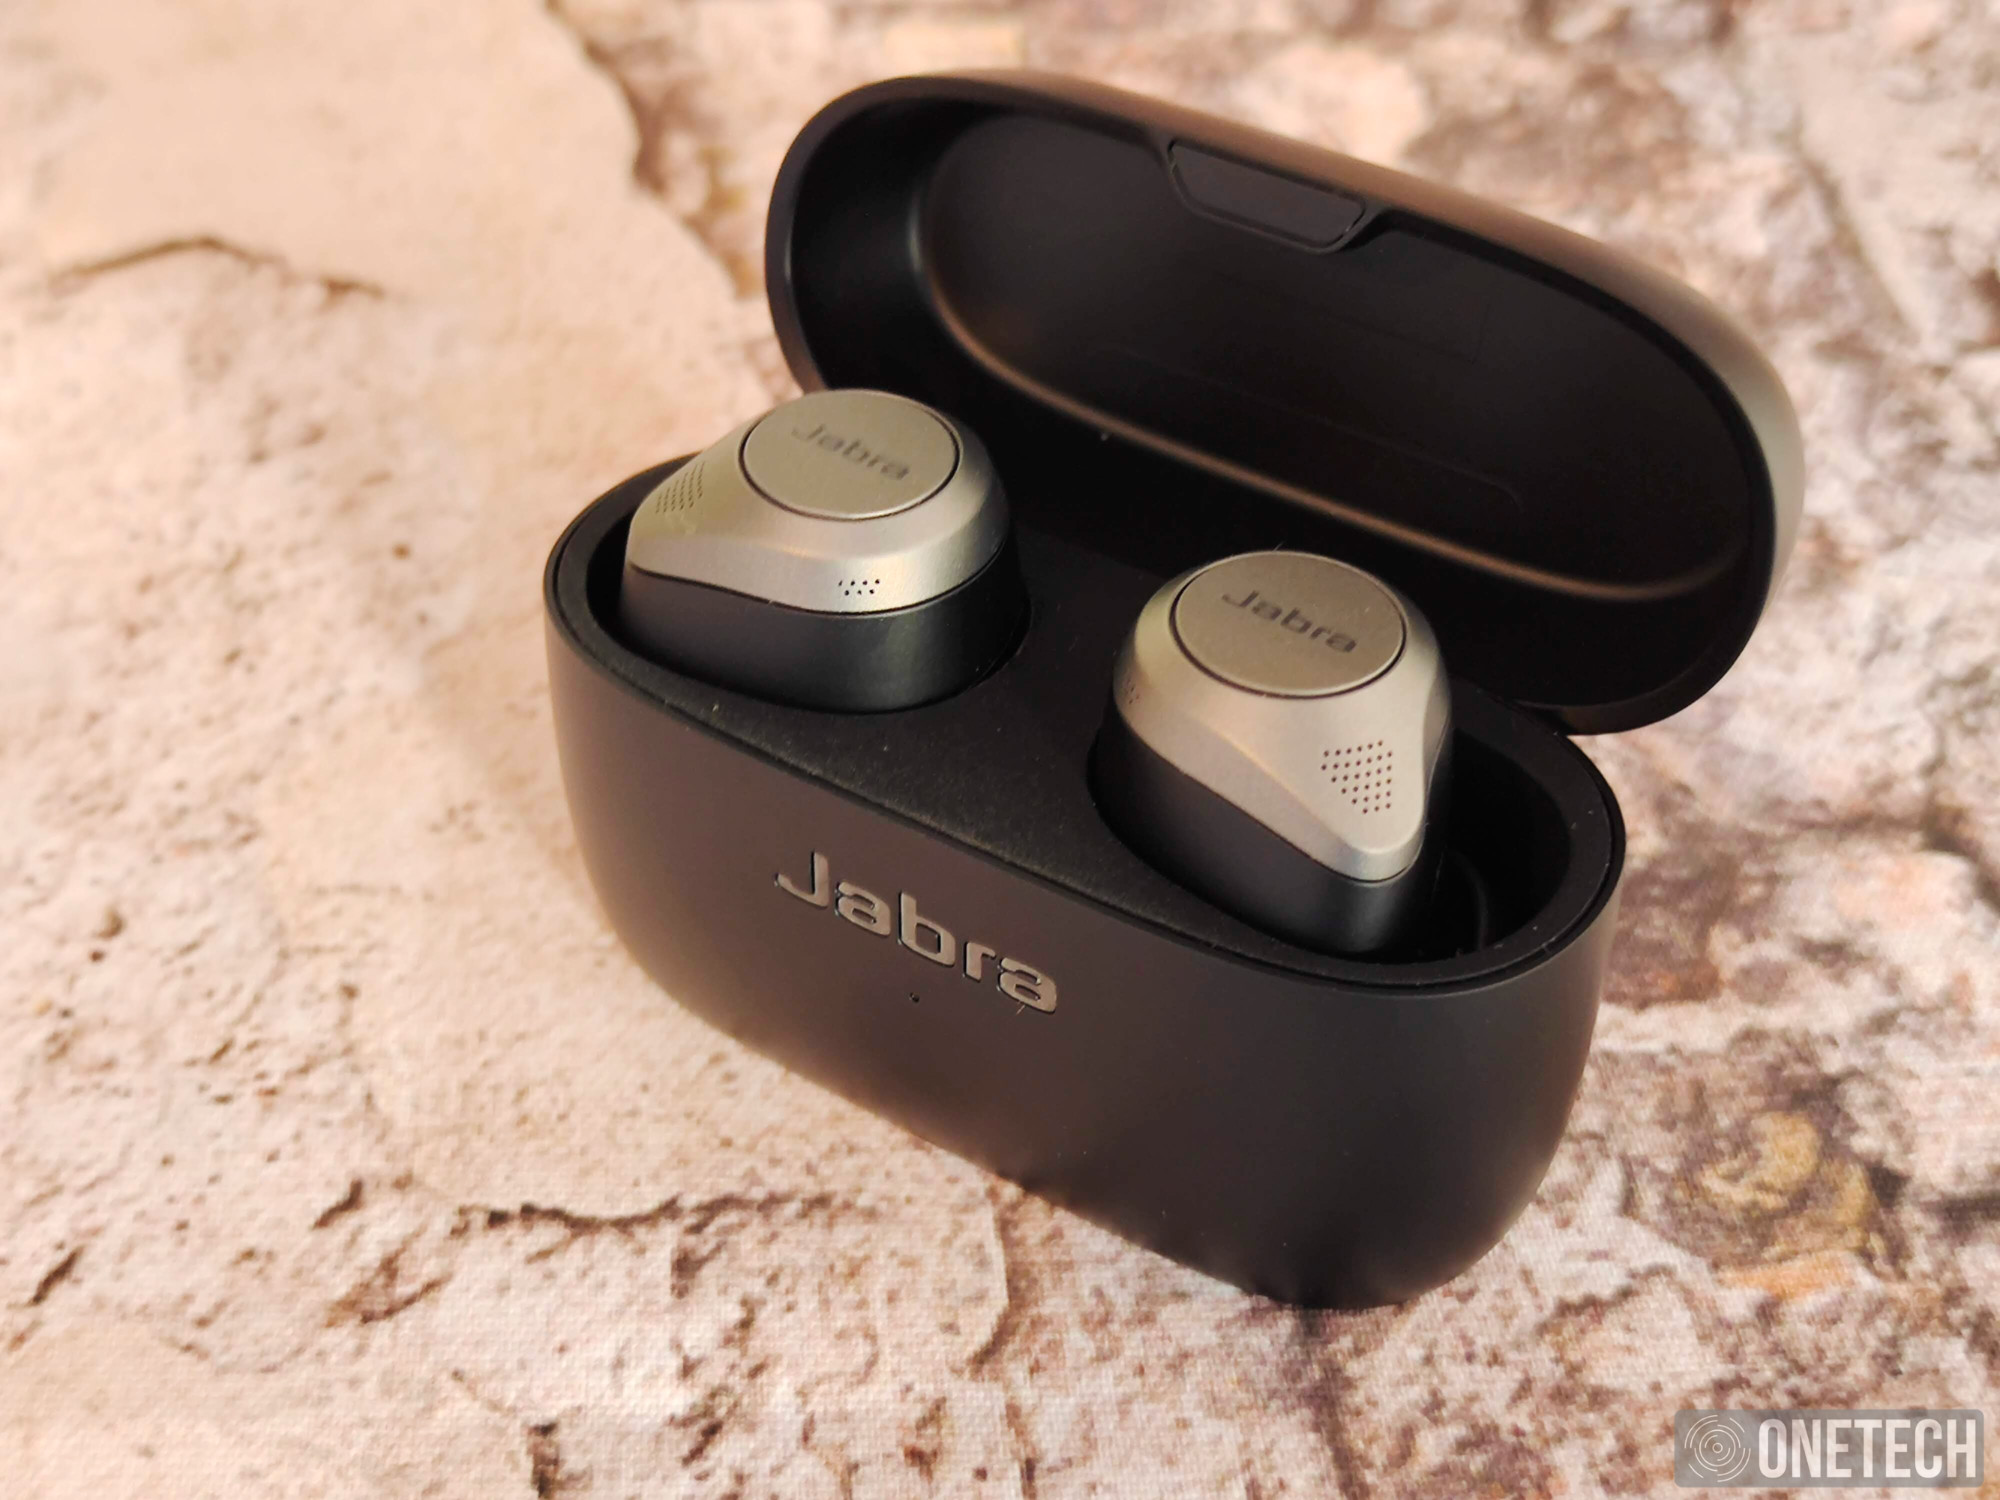 Análisis de los auriculares Jabra Elite 75t: opinión y prueba a fondo